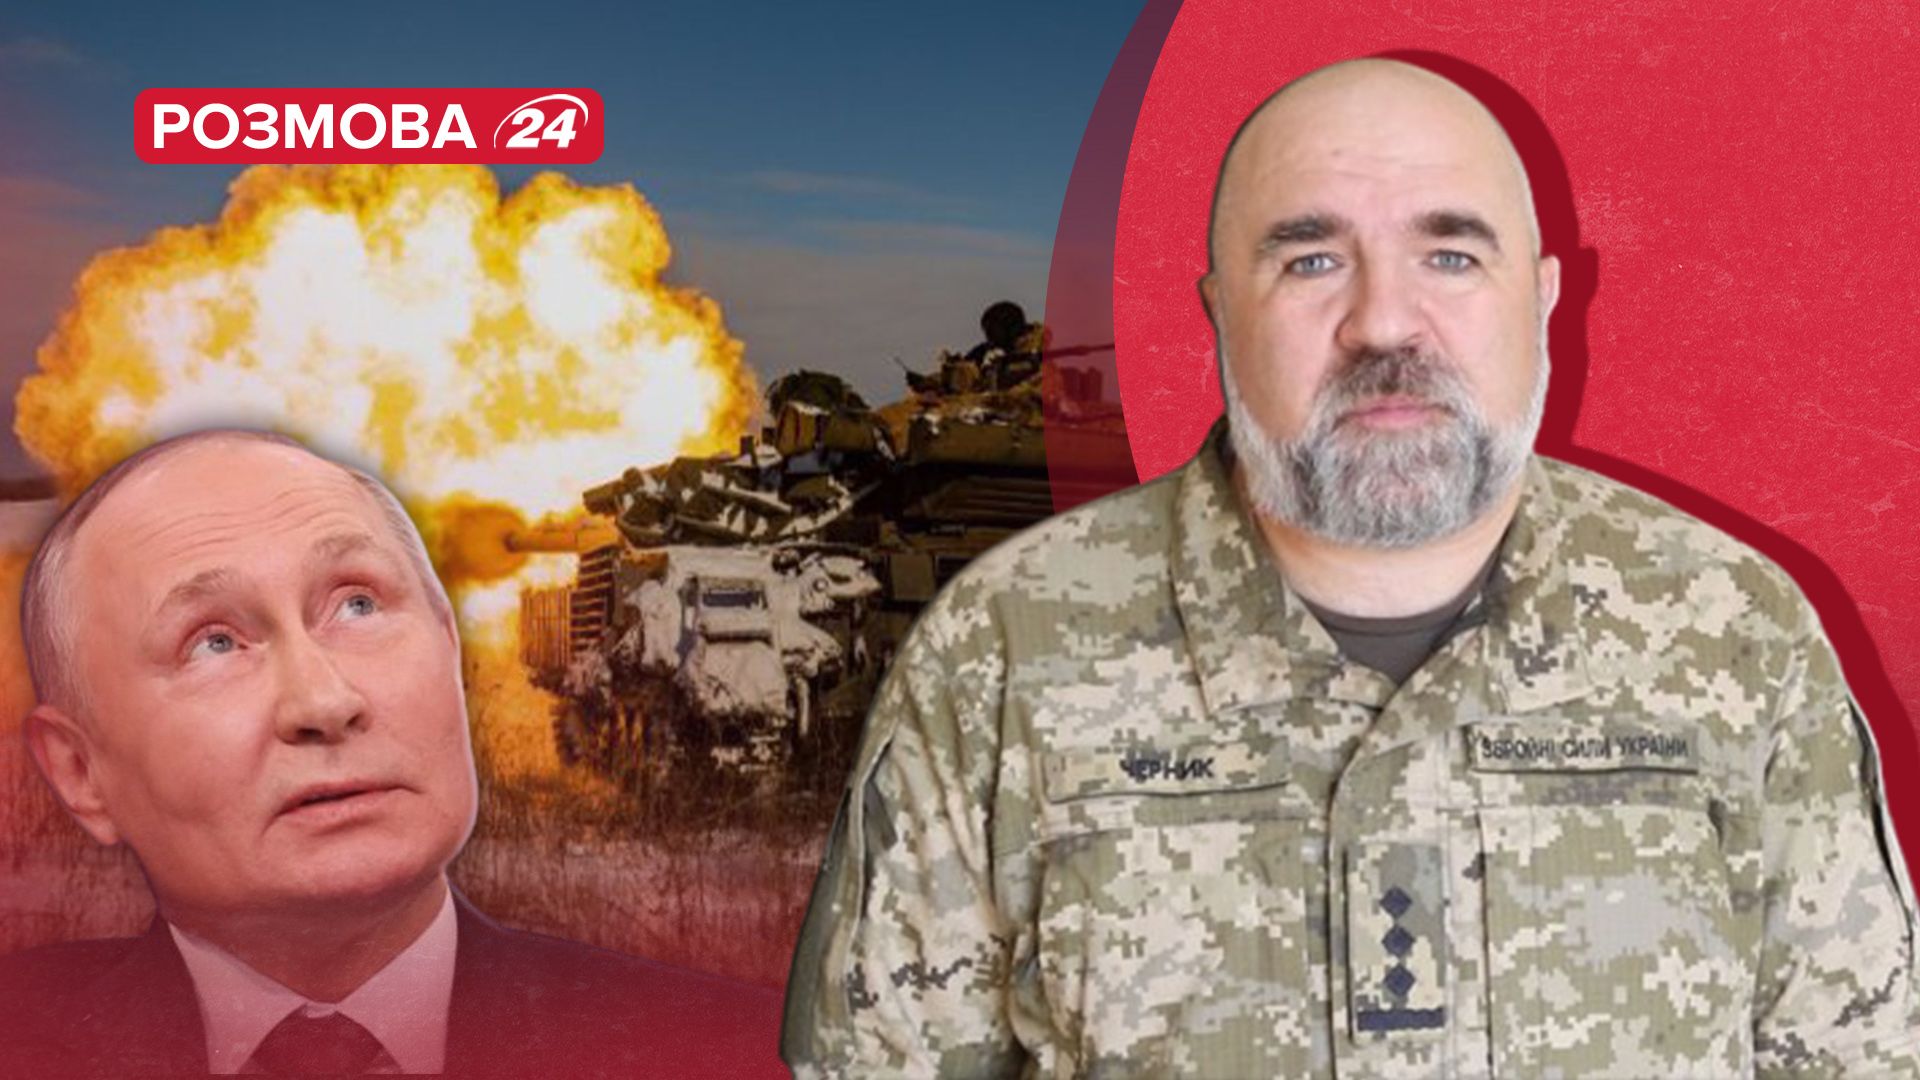 Бои за Авдеевку - Россия перебросила росгвардию - какие угрозы для Украины - 24 Канал